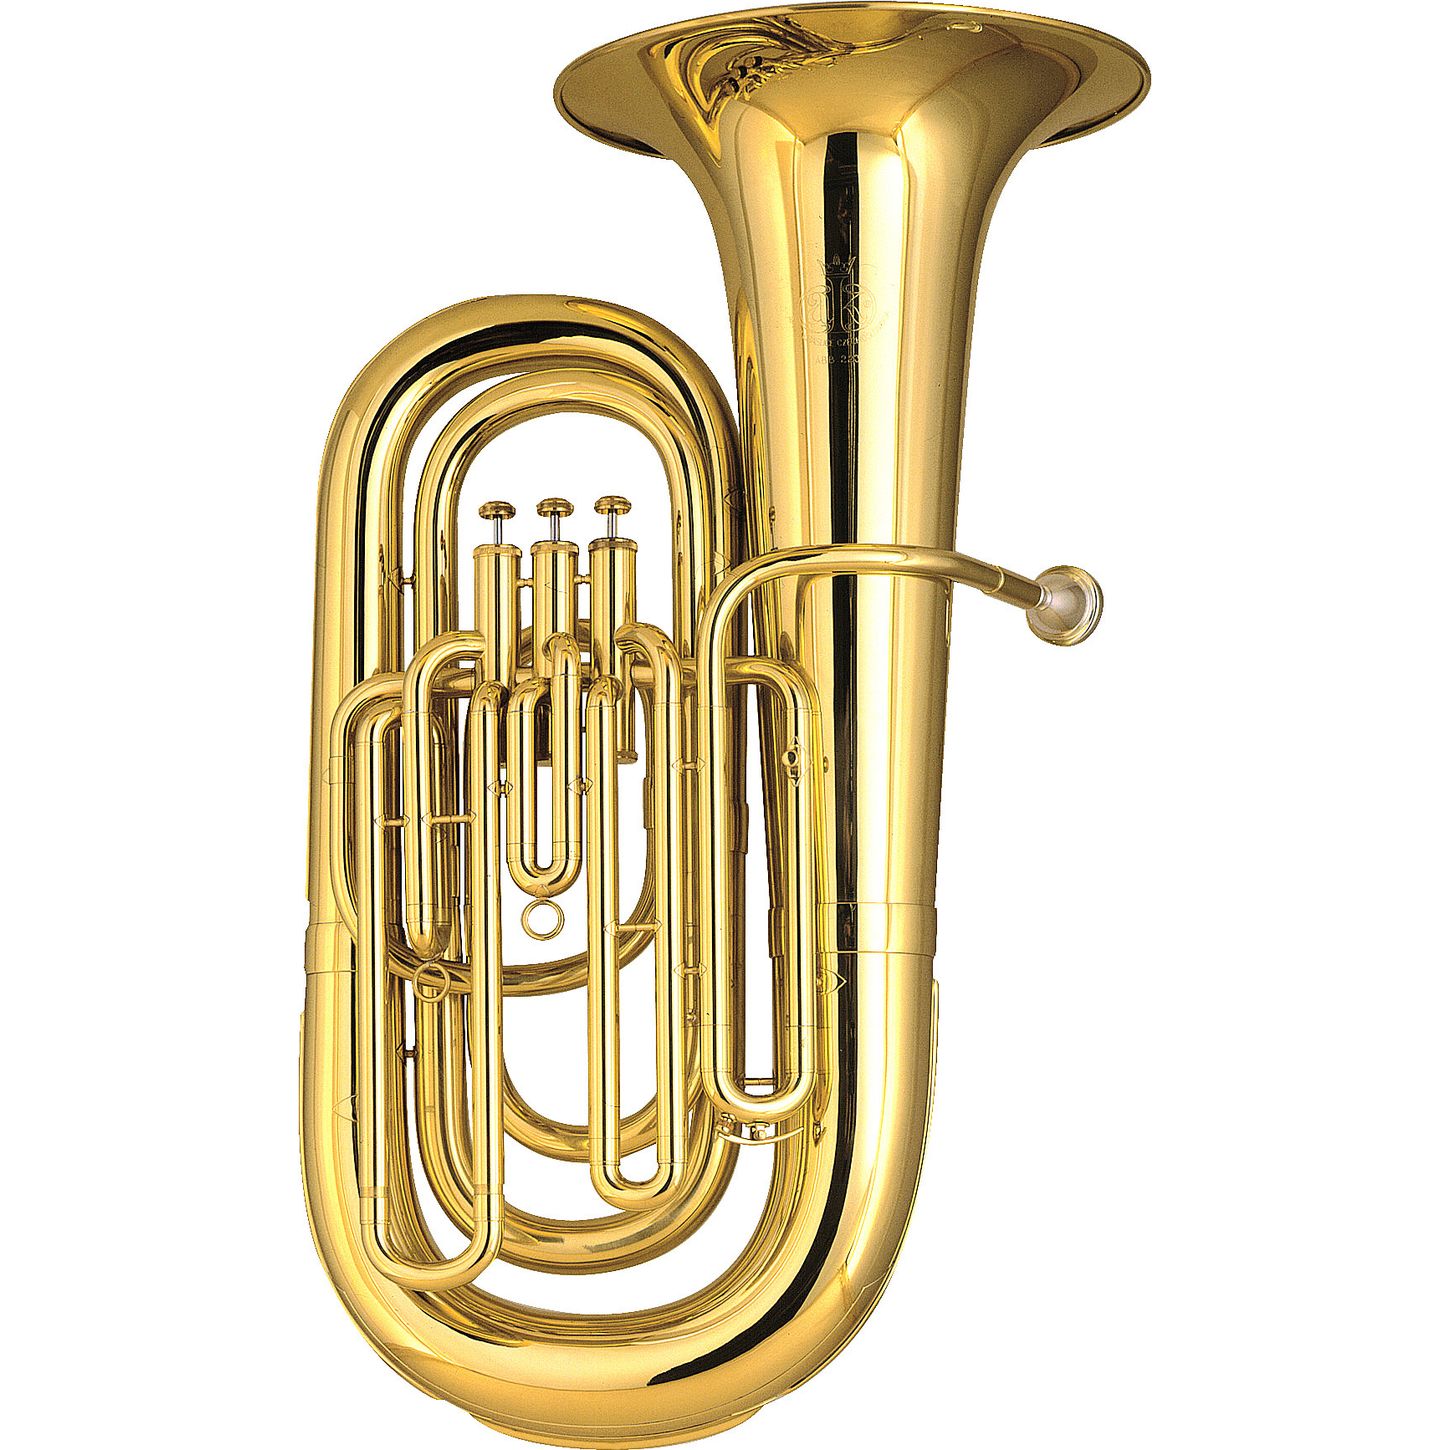 Tuba - Instrument De Musique À Vent , HD Wallpaper & Backgrounds